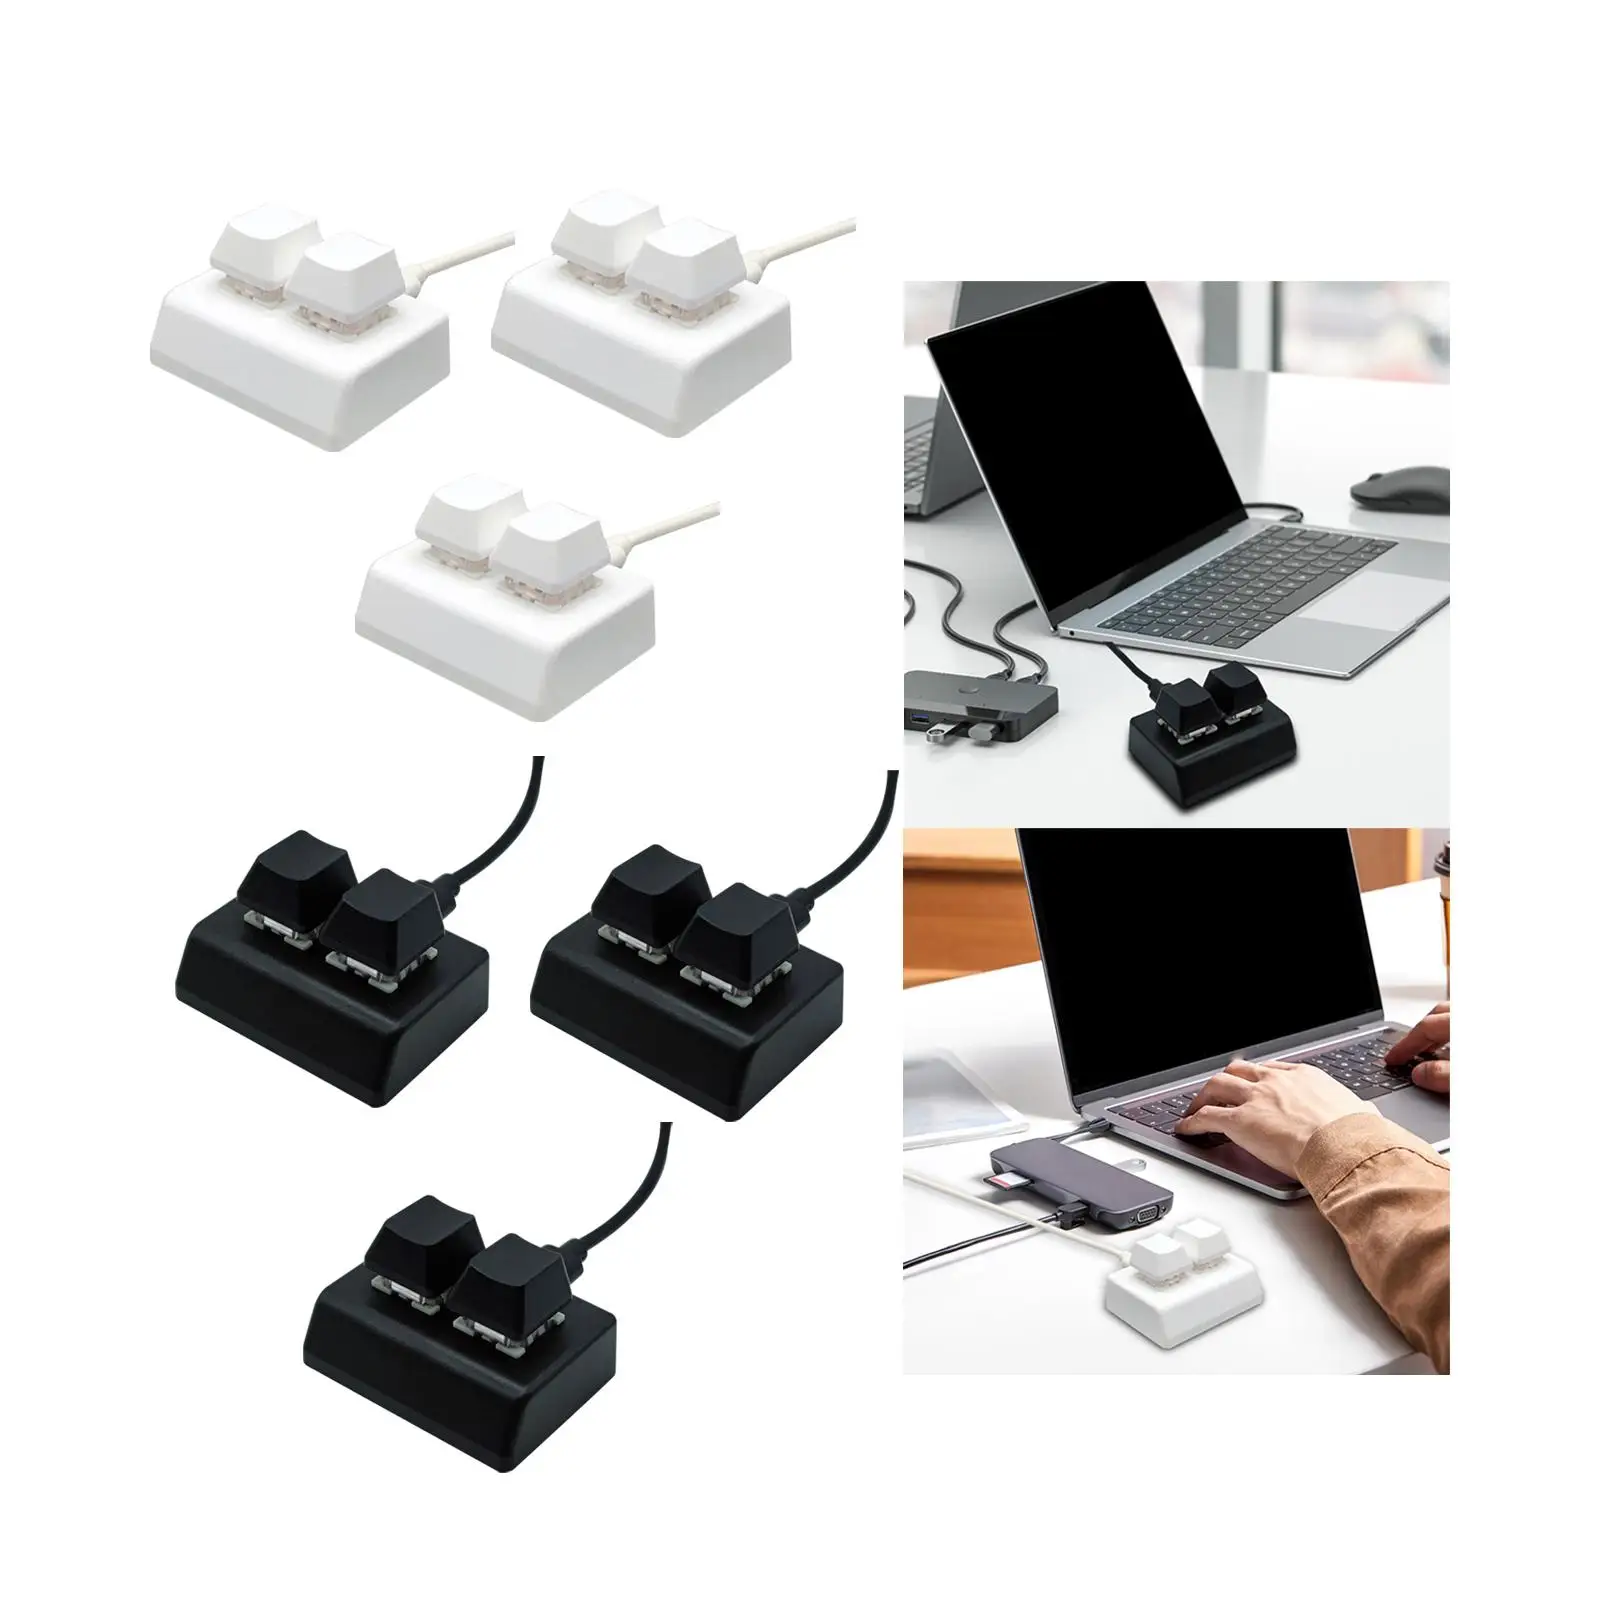 2 Key Type C Backlit Gaming USB Keyboard Programming Macro Keyboard for Audio Gaming Switch Drawing Programming Volume Control